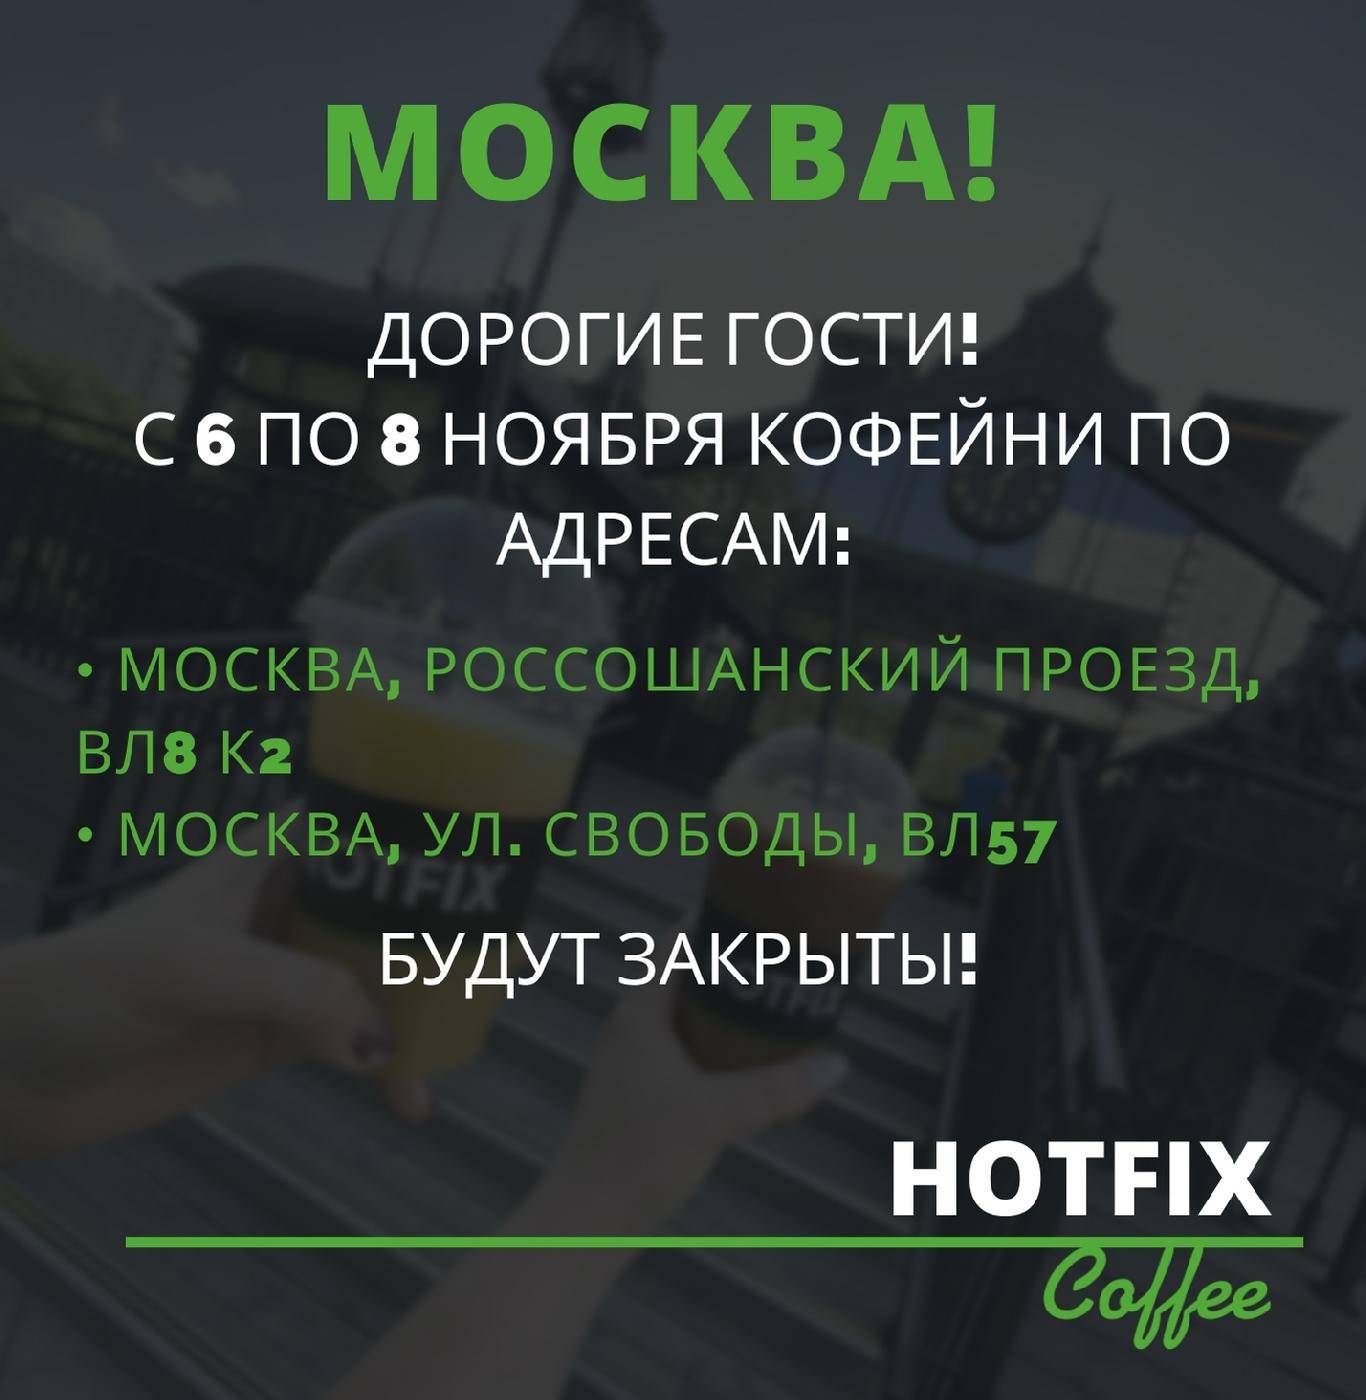 Санитарные дни в кофейнях Москвы (Московские ярмарки)